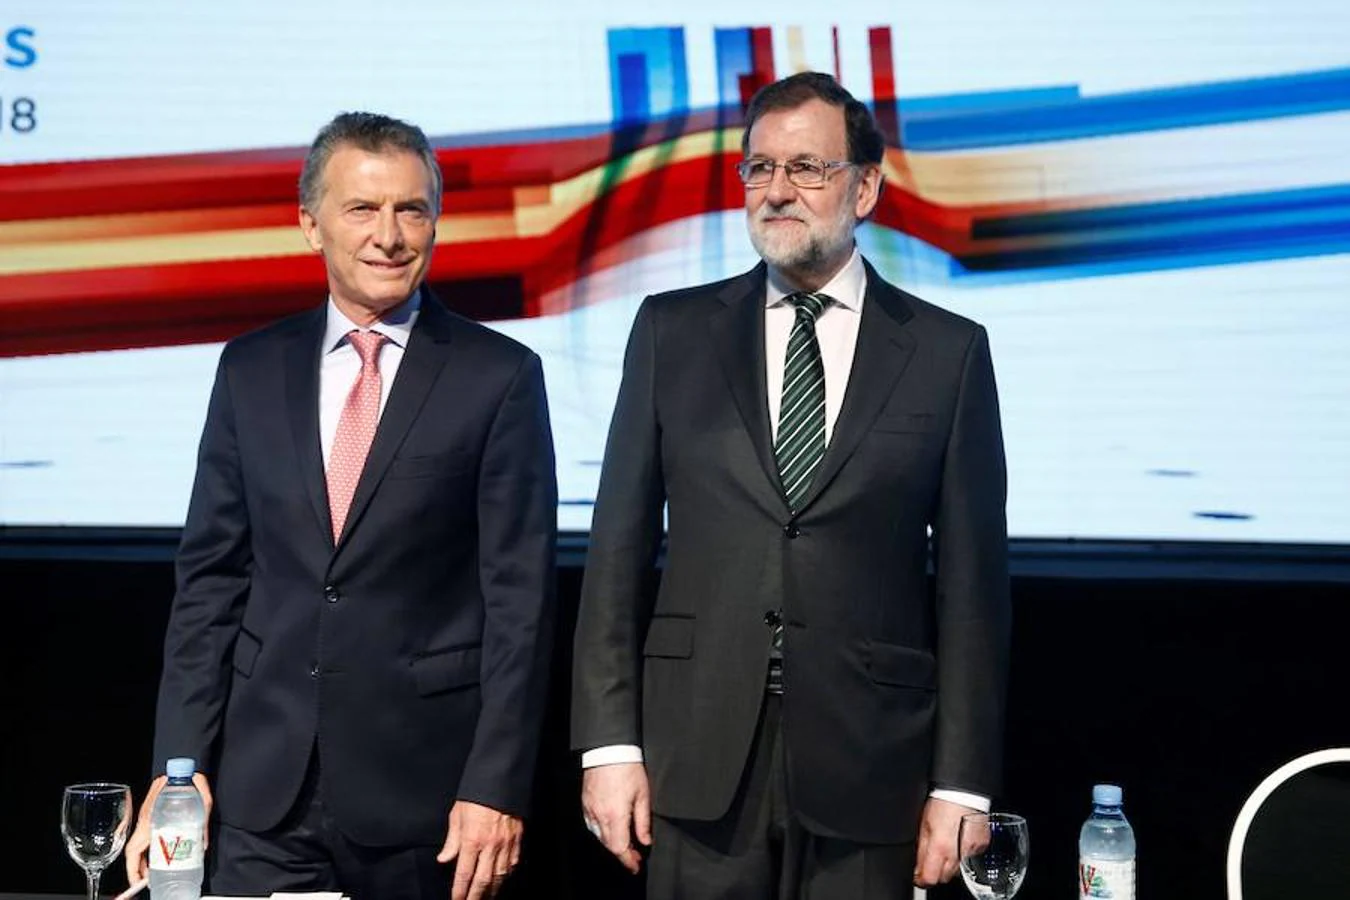 La visita de estado de Rajoy a Argentina, en imágenes. Ambos mandatarios han participado juntos en un encuentro empresarial destinado a favorecer las inversiones entre ambos países